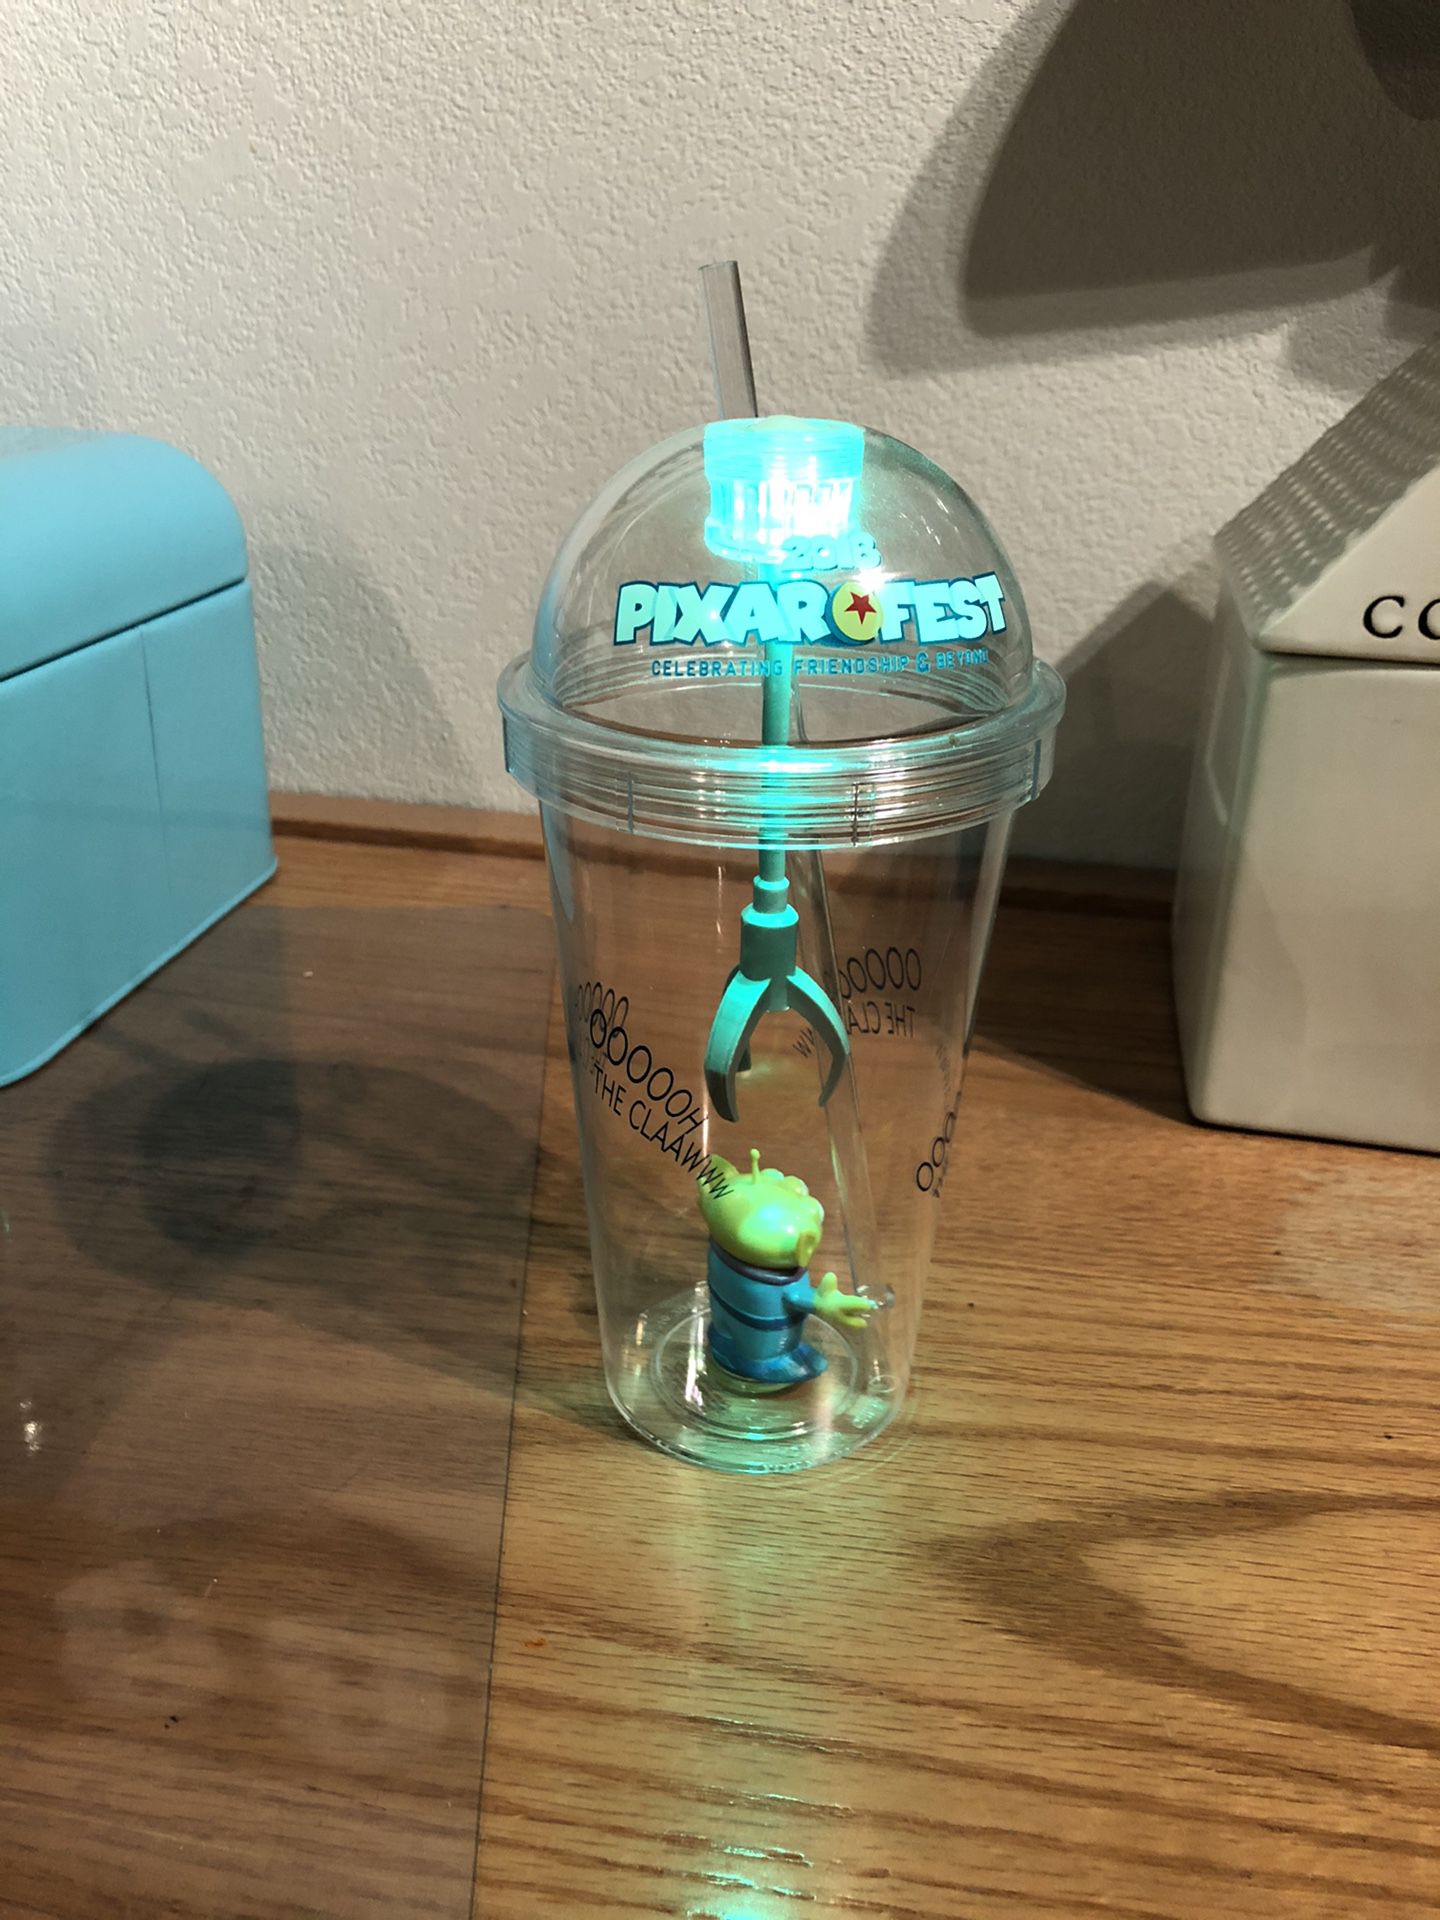 Disney Toy Story Green alien light-up tumbler